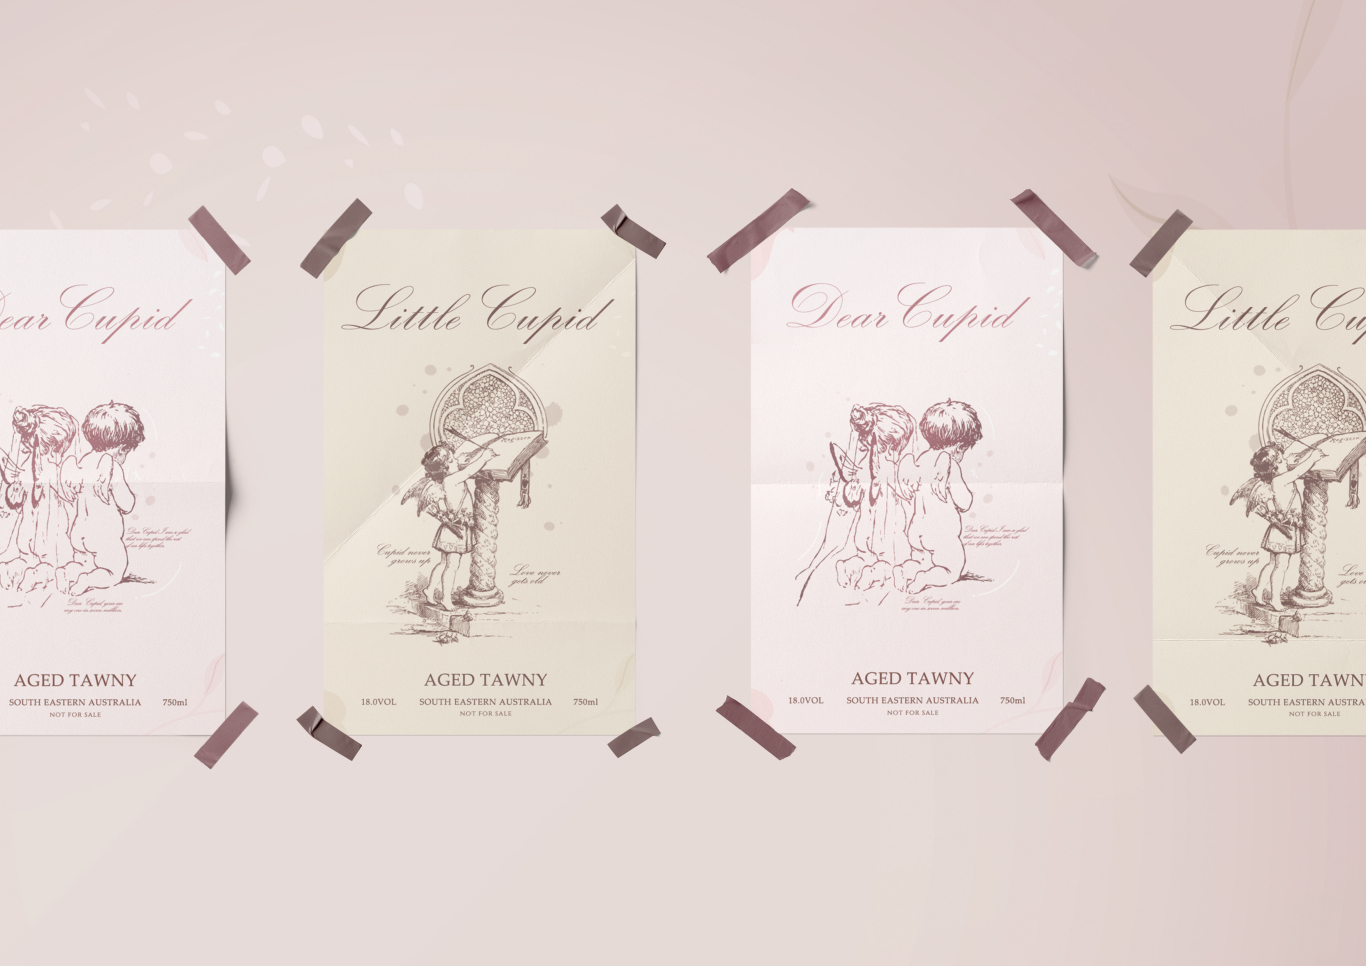 小爱神葡萄酒–Little cupidxDear cupid品牌包装设计图5